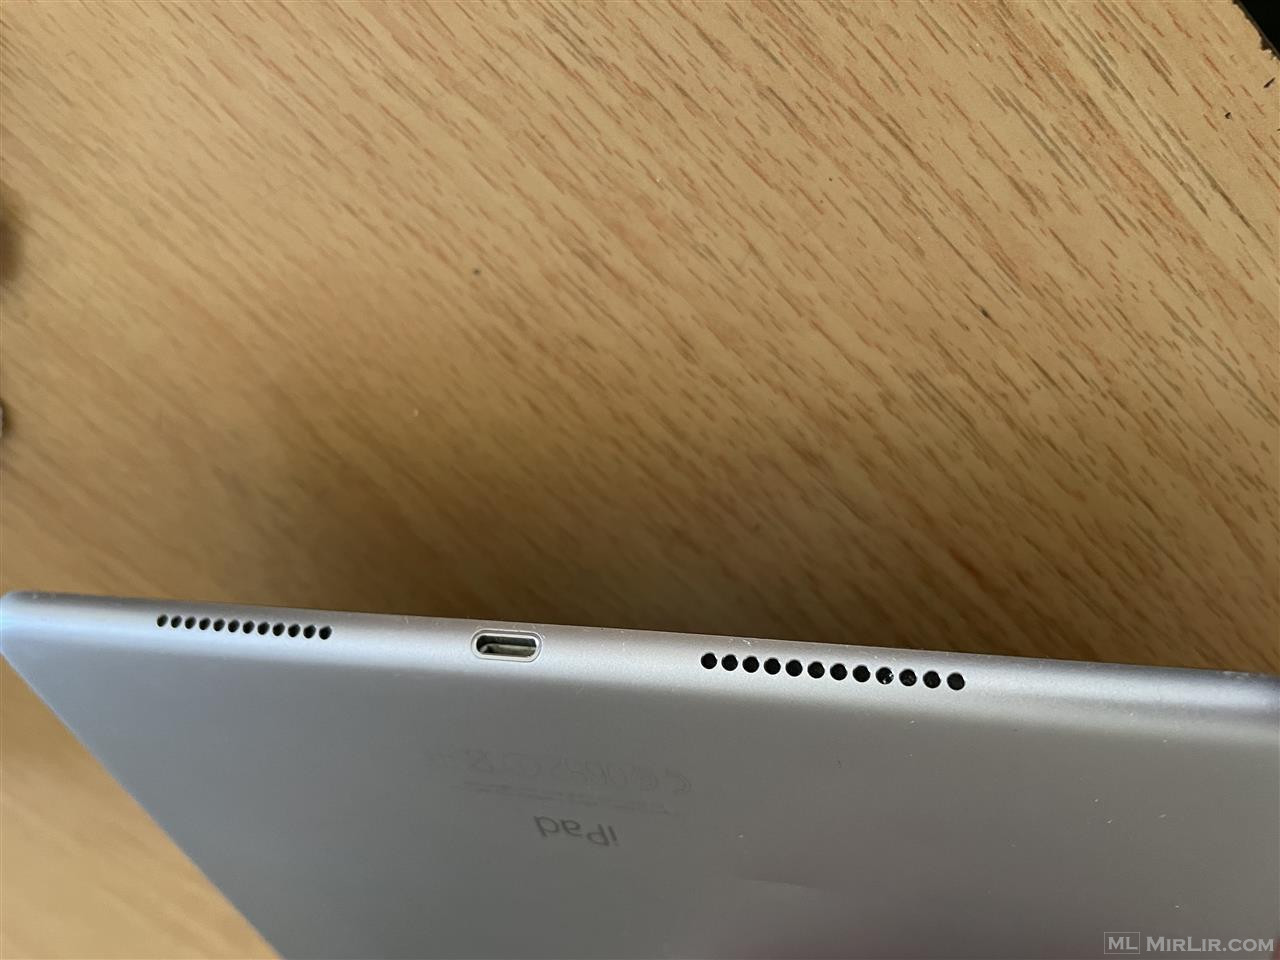 Shitet ipad apple pro 9.7 inch 32000 mj lek i diskutushem